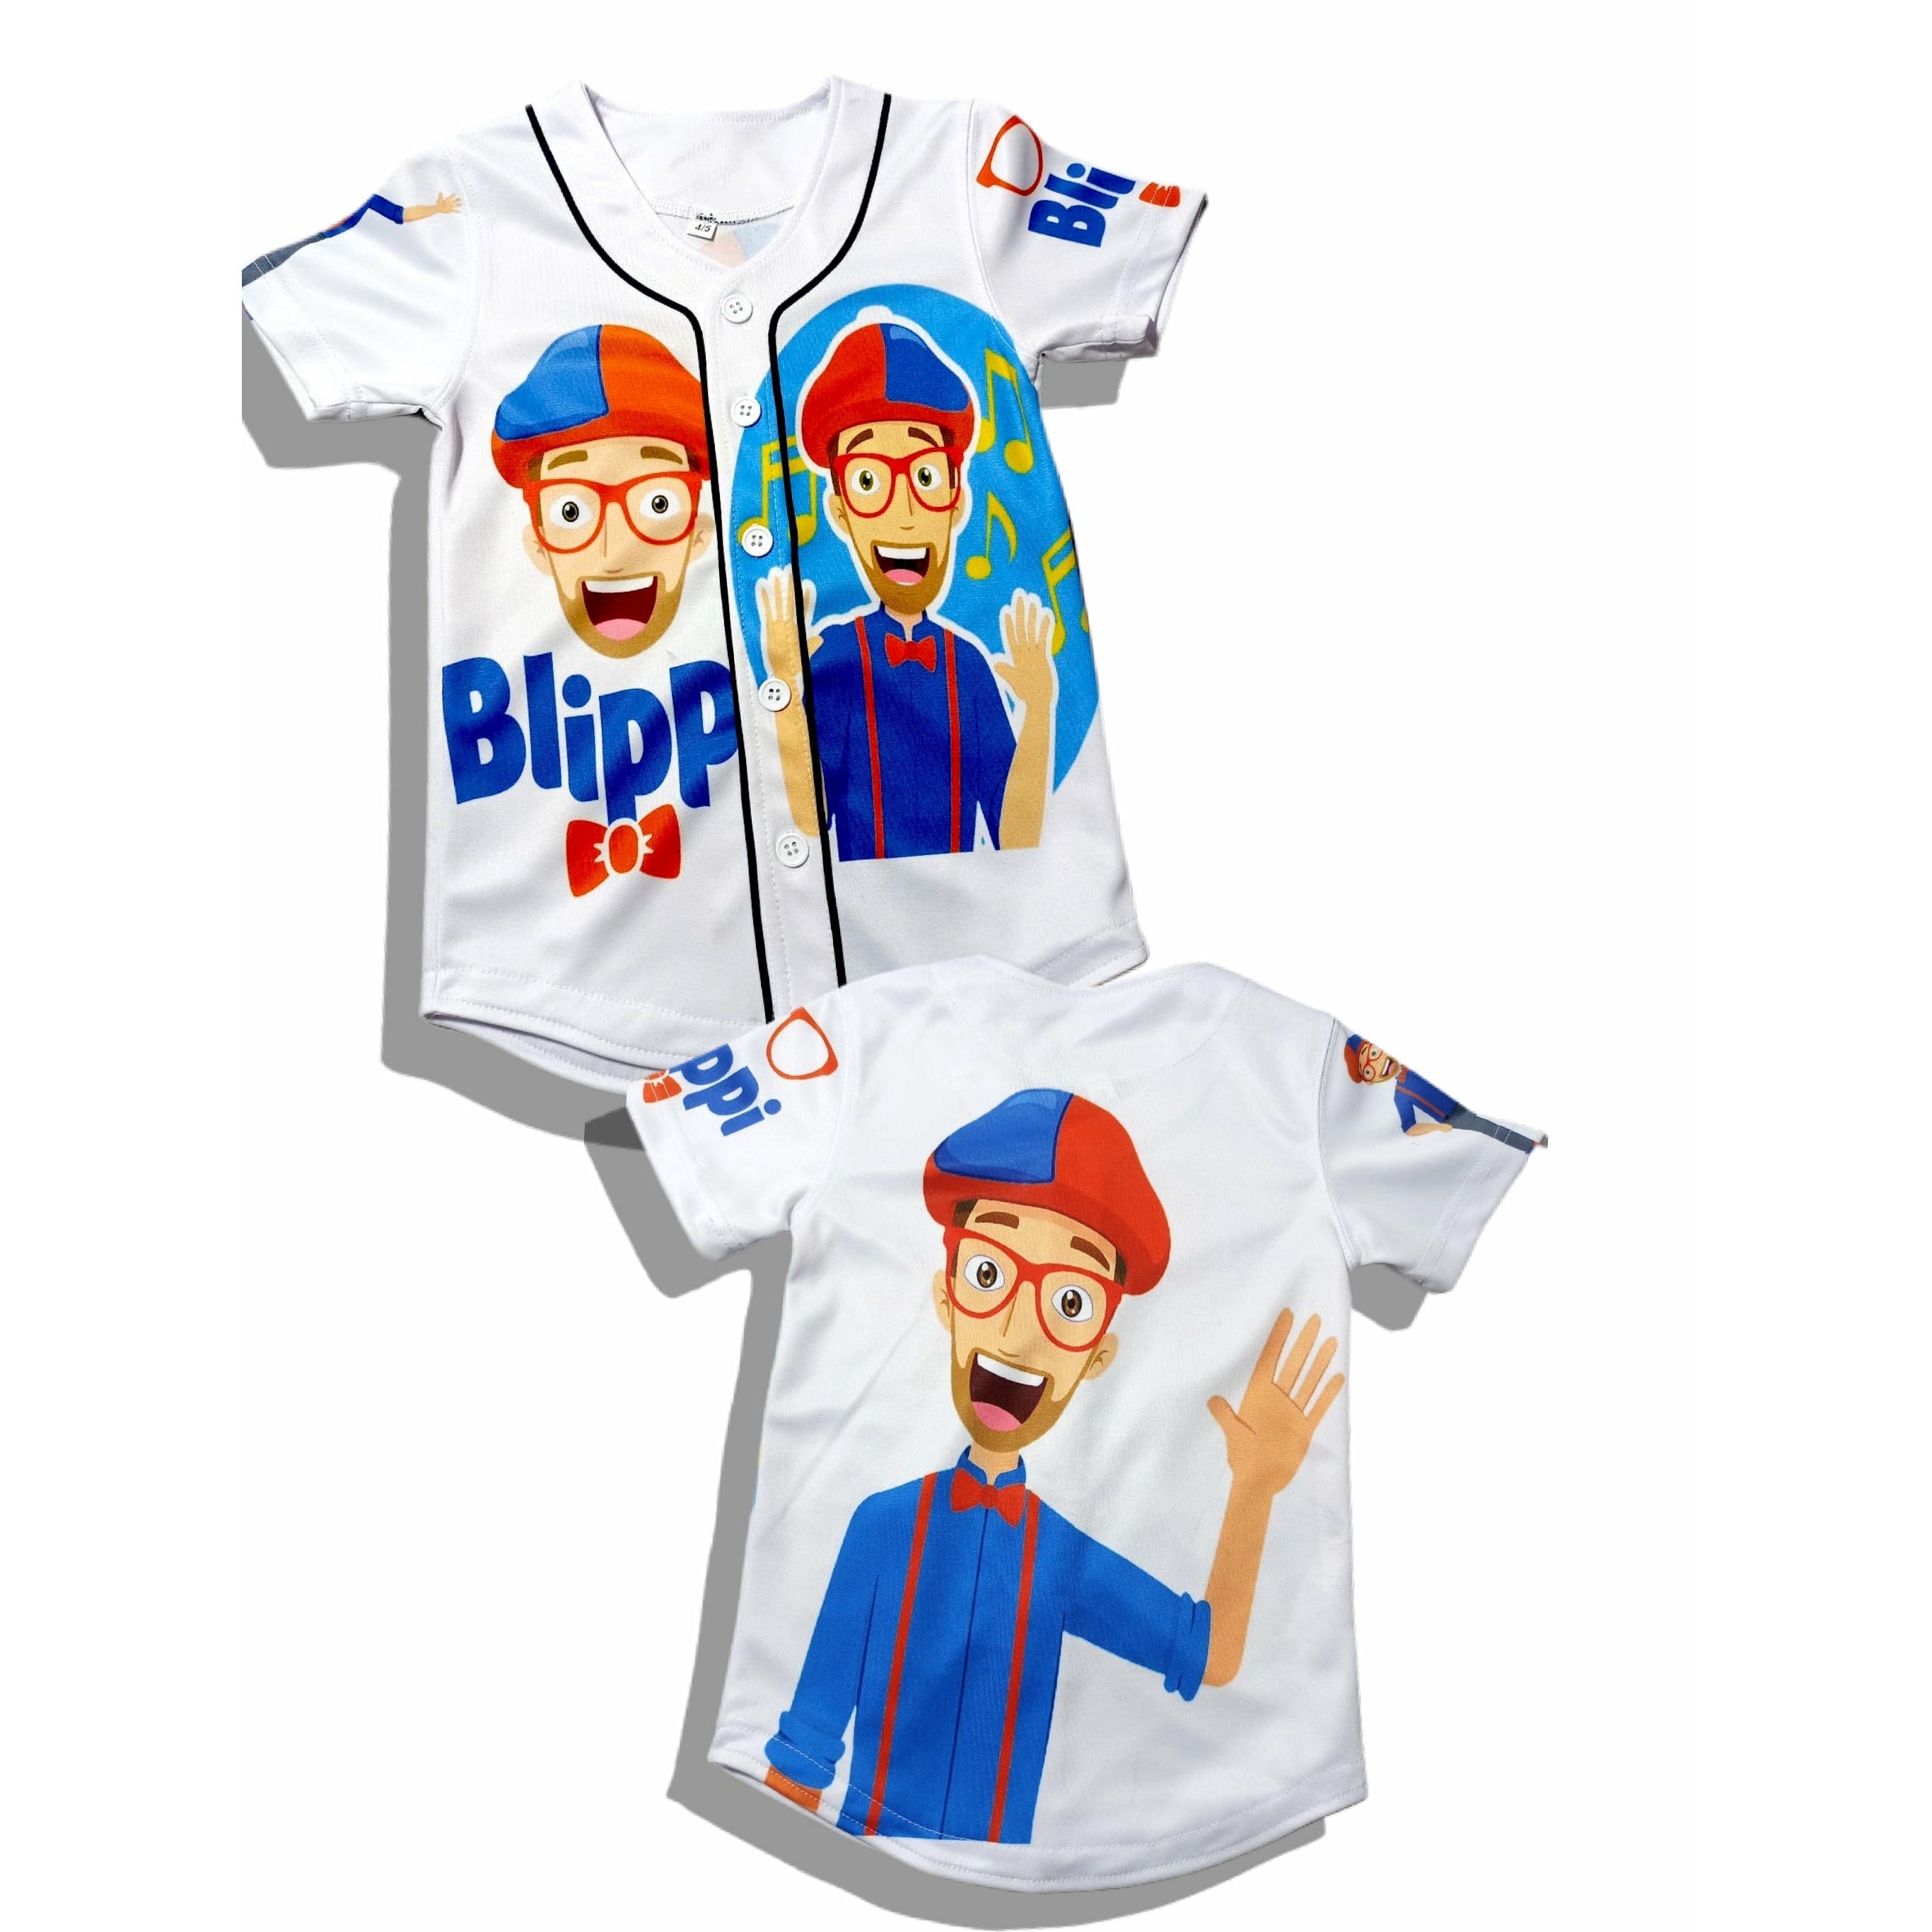 Men's Blippi Baseball Jersey